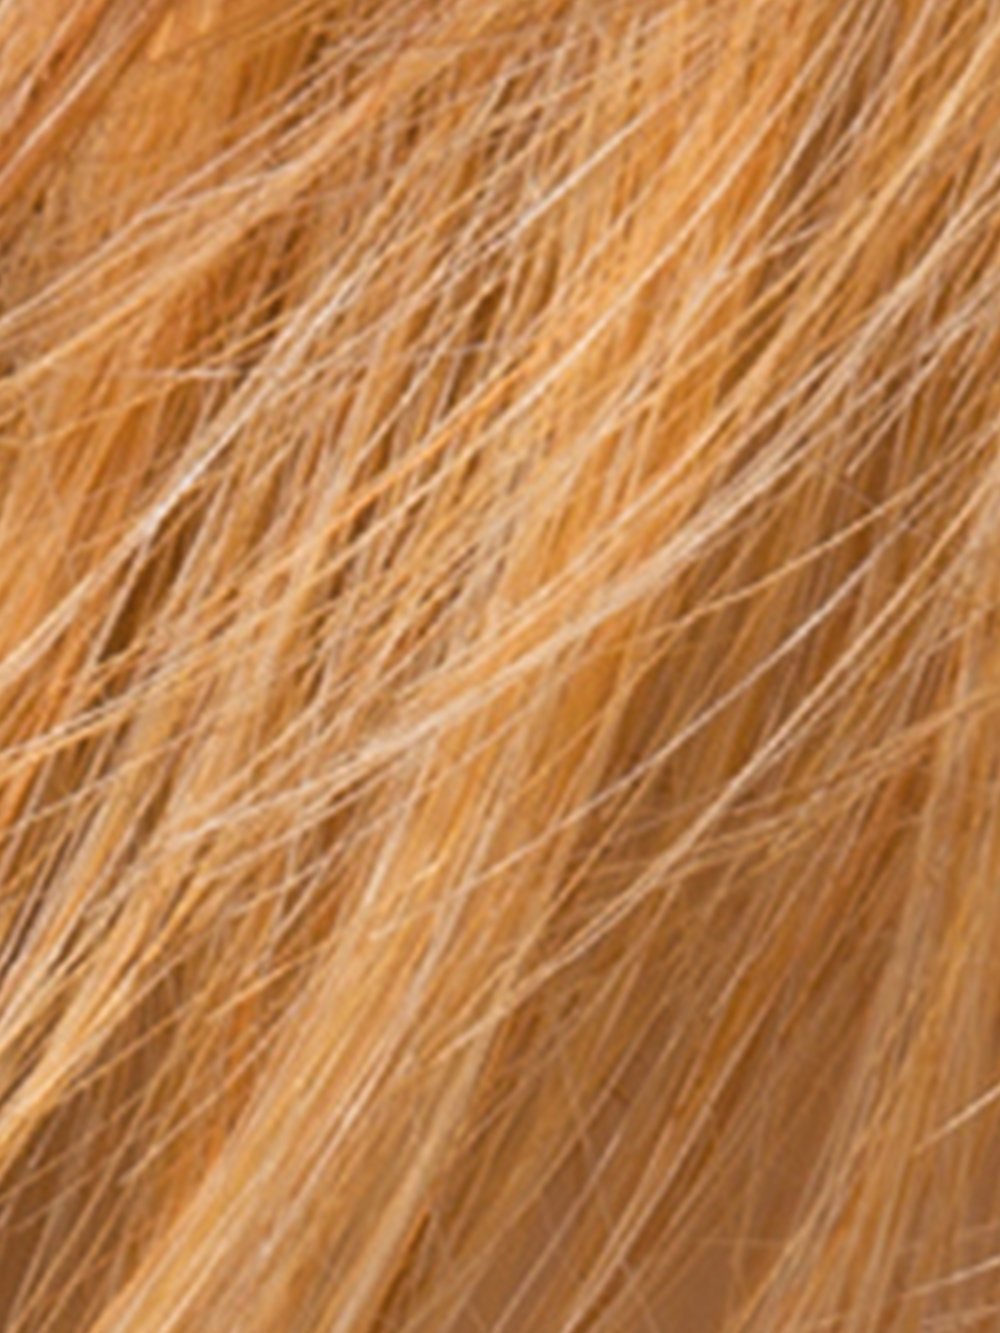 MANGO MIX | Light Copper Red, Light Golden Blonde, and Medium Auburn blend